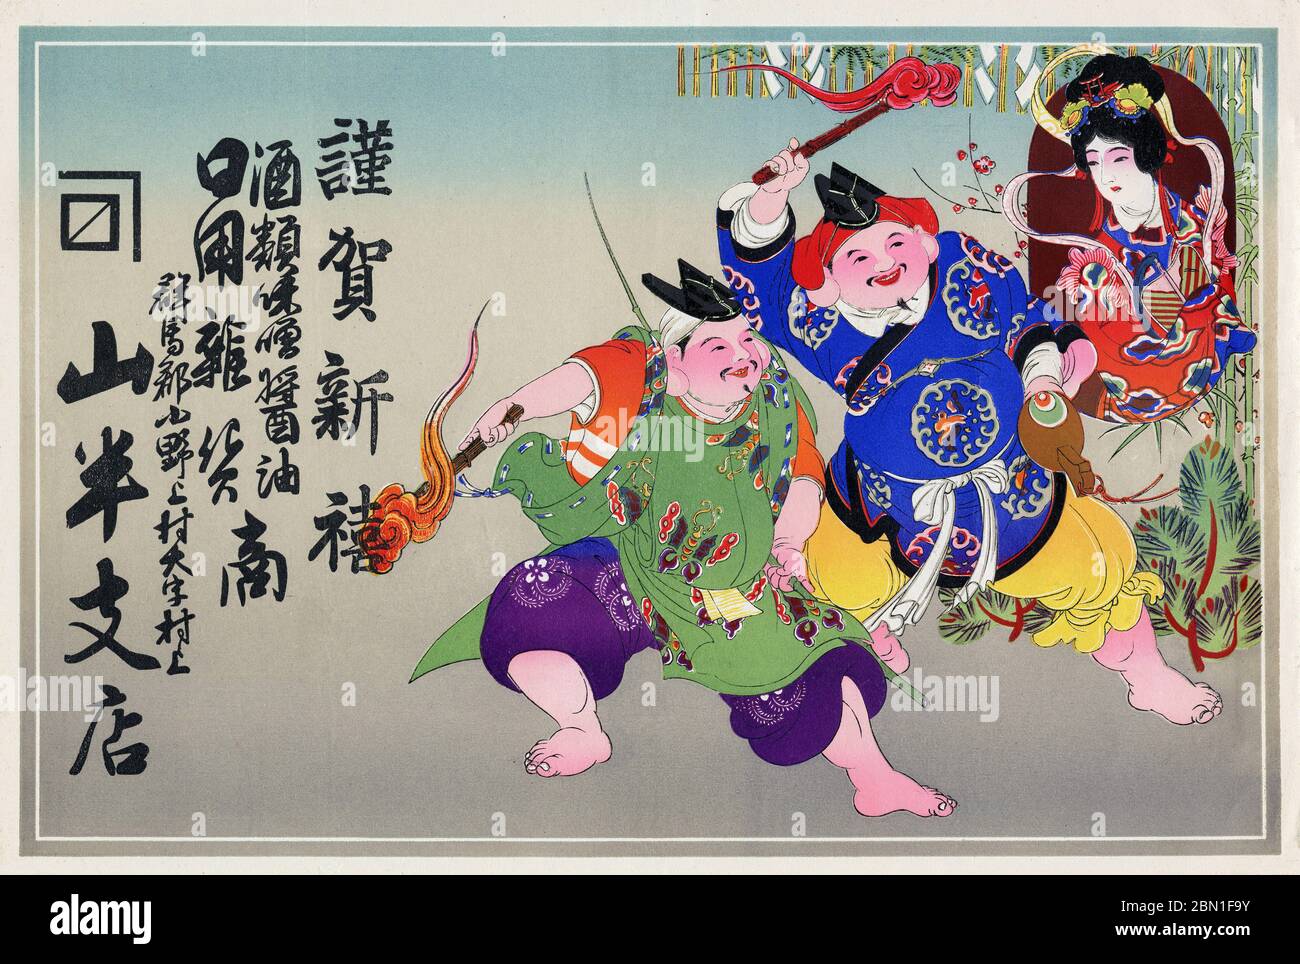 [ Japan 1900 - Japanische Glücksgötter ] - Hikifuda (引札), ein Print, der von lokalen Geschäften als Werbeflyer verwendet wird. Sie waren von den 1800er bis in die 1920er Jahre populär. Dieser Druck zeigt Ebisu (恵比寿, links), Daikokuten (大黒天, Mitte) und Benzaiten (弁才天 oder 弁財天, rechts), drei der Sieben Glücksgötter (七福神 Shichi Fukujin), die angeblich den Menschen Glück beschert haben. Sie waren ein wesentlicher Bestandteil der traditionellen japanischen Neujahrsfeiern. 20. Jahrhundert Vintage Werbung Flyer. Stockfoto